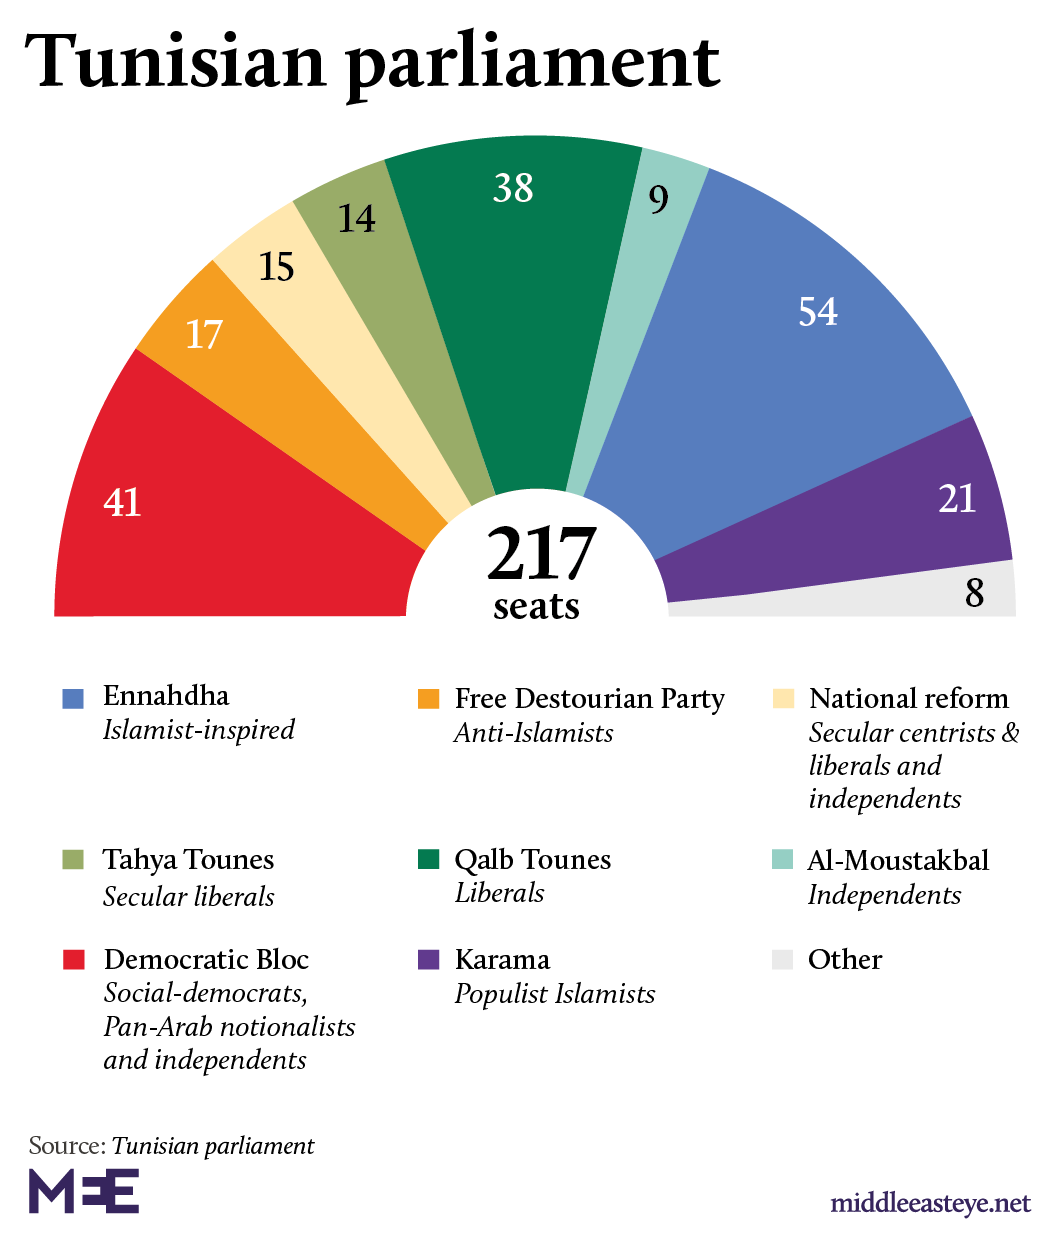 Breakdown of seats in Tunisia's parliament